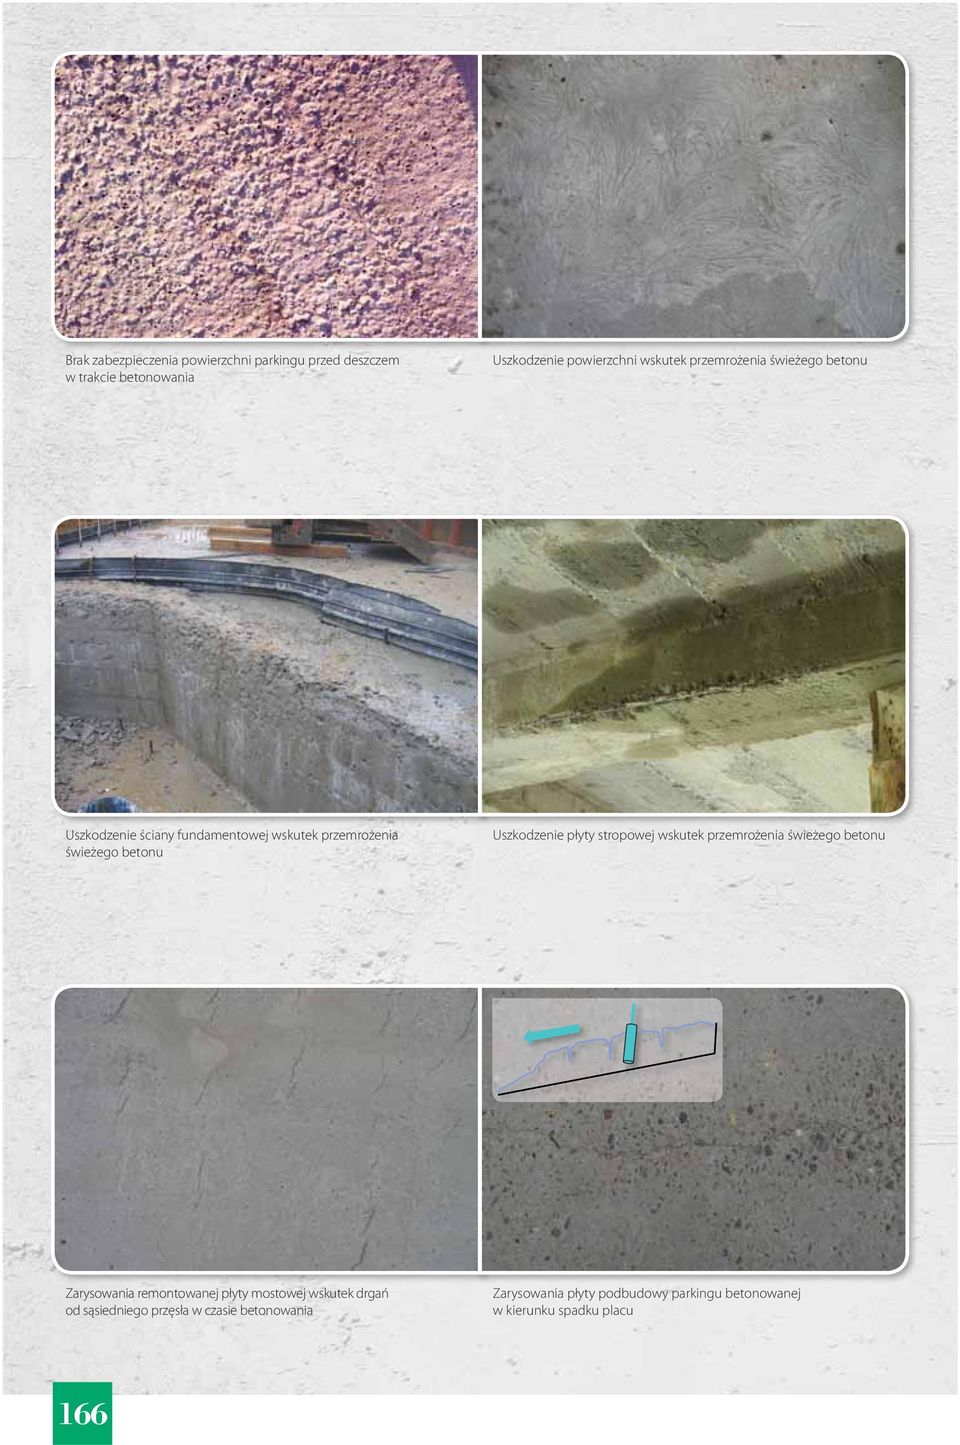 płyty stropowej wskutek przemrożenia świeżego betonu Zarysowania remontowanej płyty mostowej wskutek drgań od